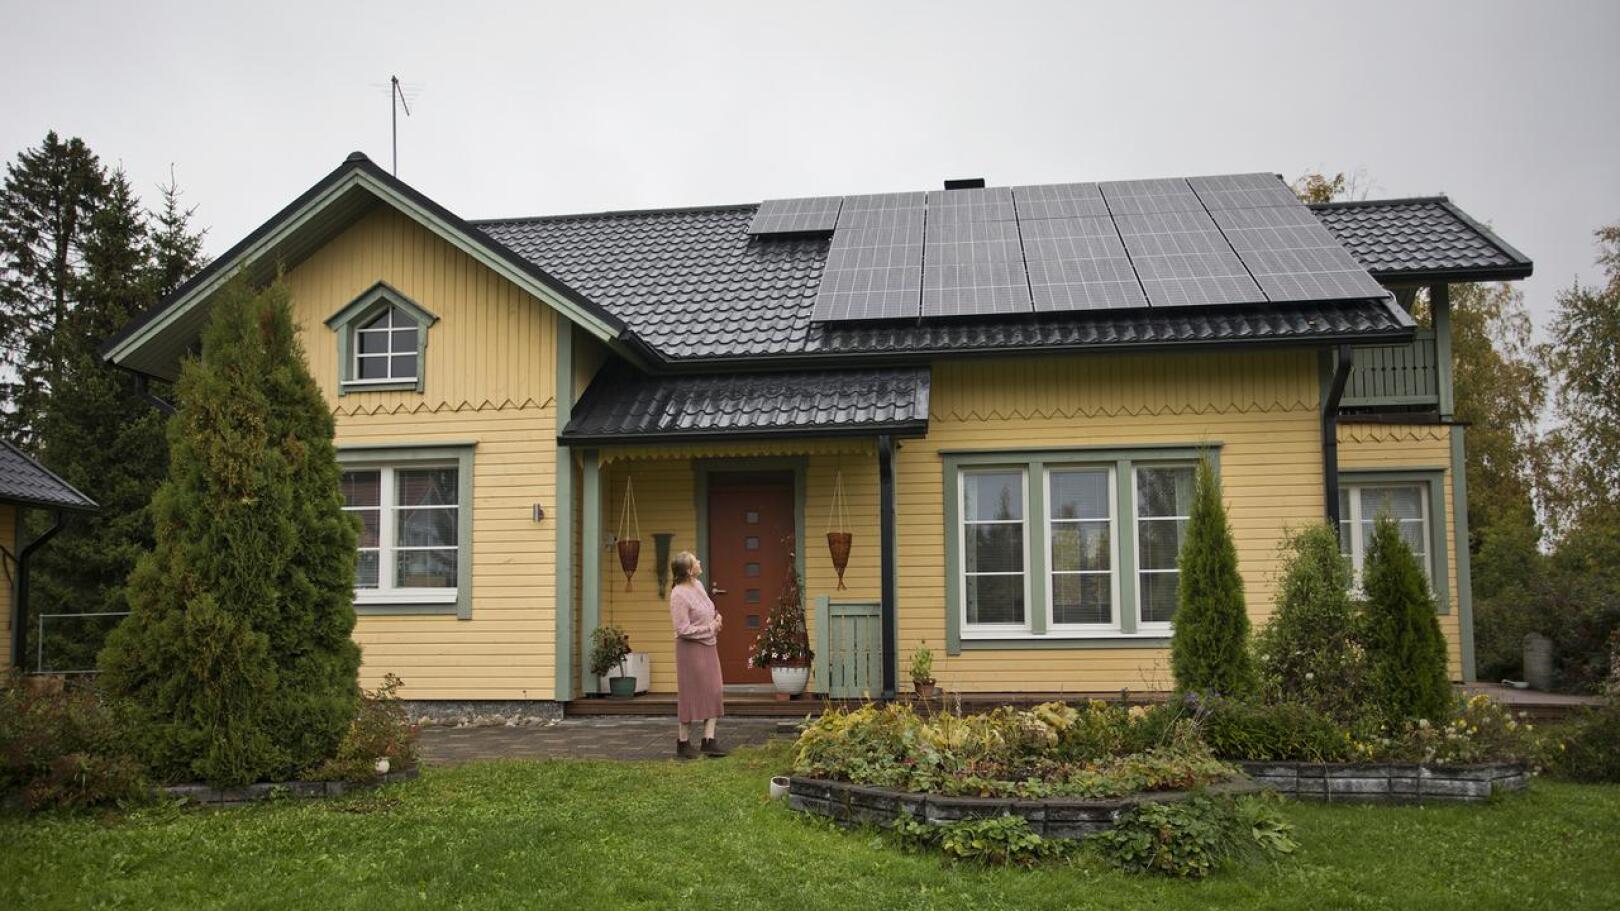 Aurinkopaneelit sulautuvat vuonna 1998 rakennetun talon kattoon. Päivikki Turunen ehti toivoa paneeleita jo vuosia sähkölämmitteiseen taloon.